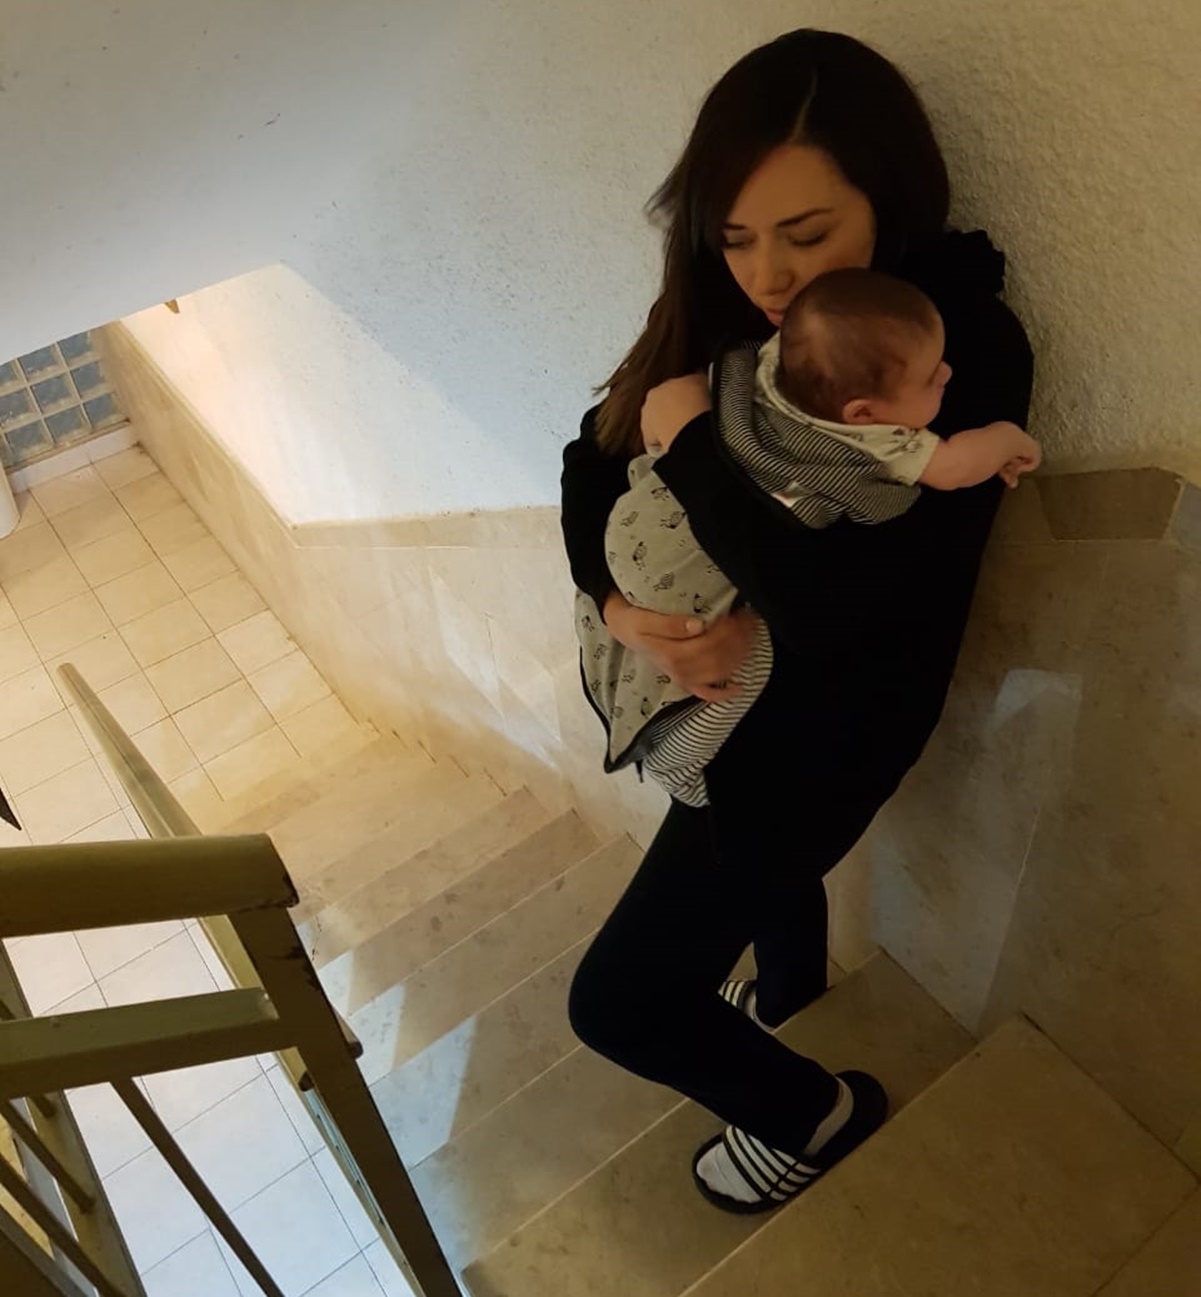 Con bebé en brazos, youtubers mexicanos sortean misiles y terror en Israel